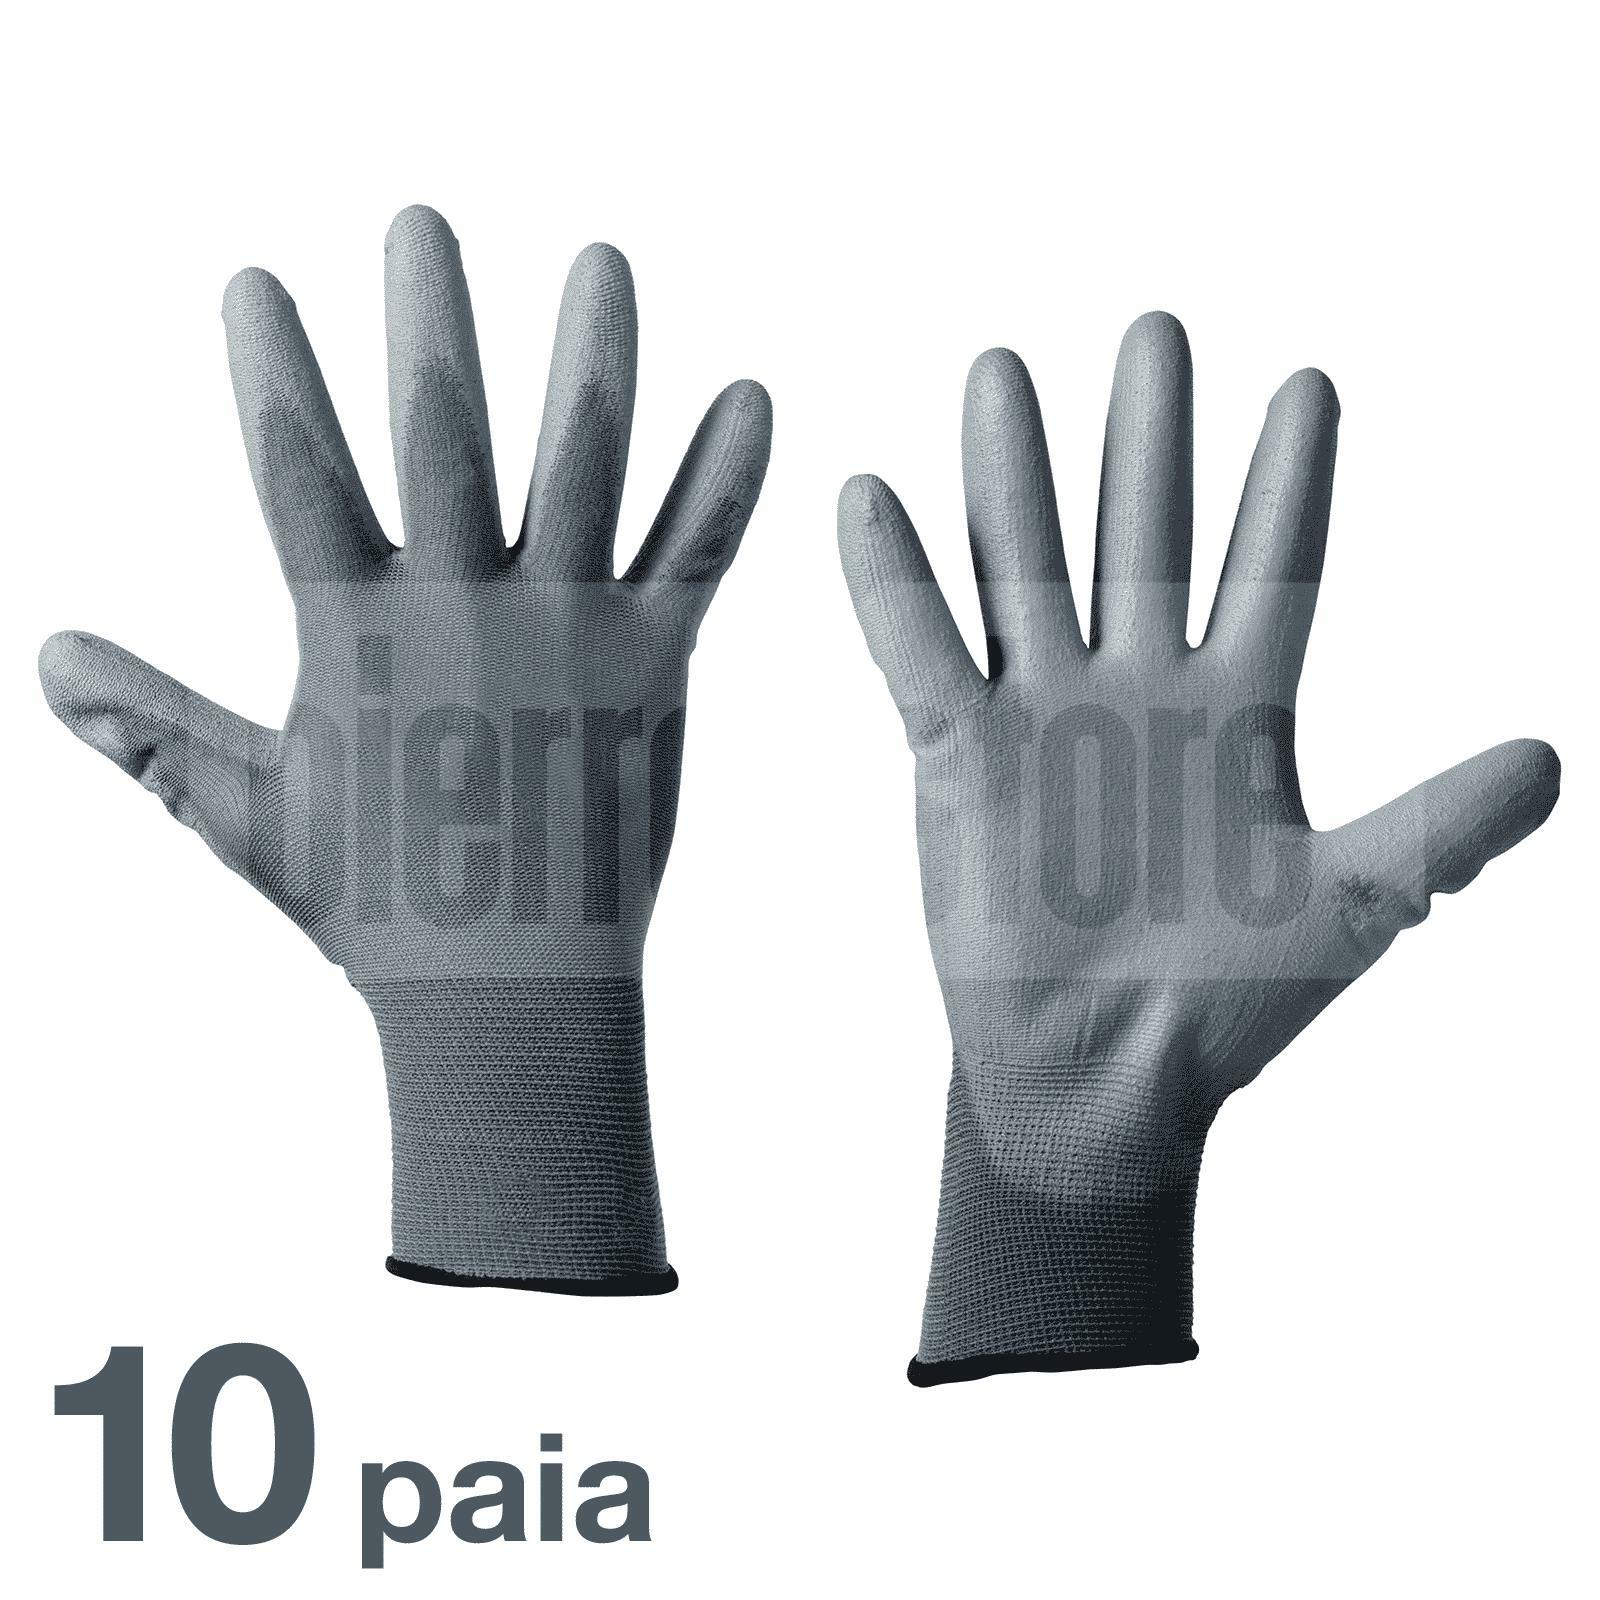 bracaglia guanti da lavoro in poliuretano spalmato tg. 9 10 paia